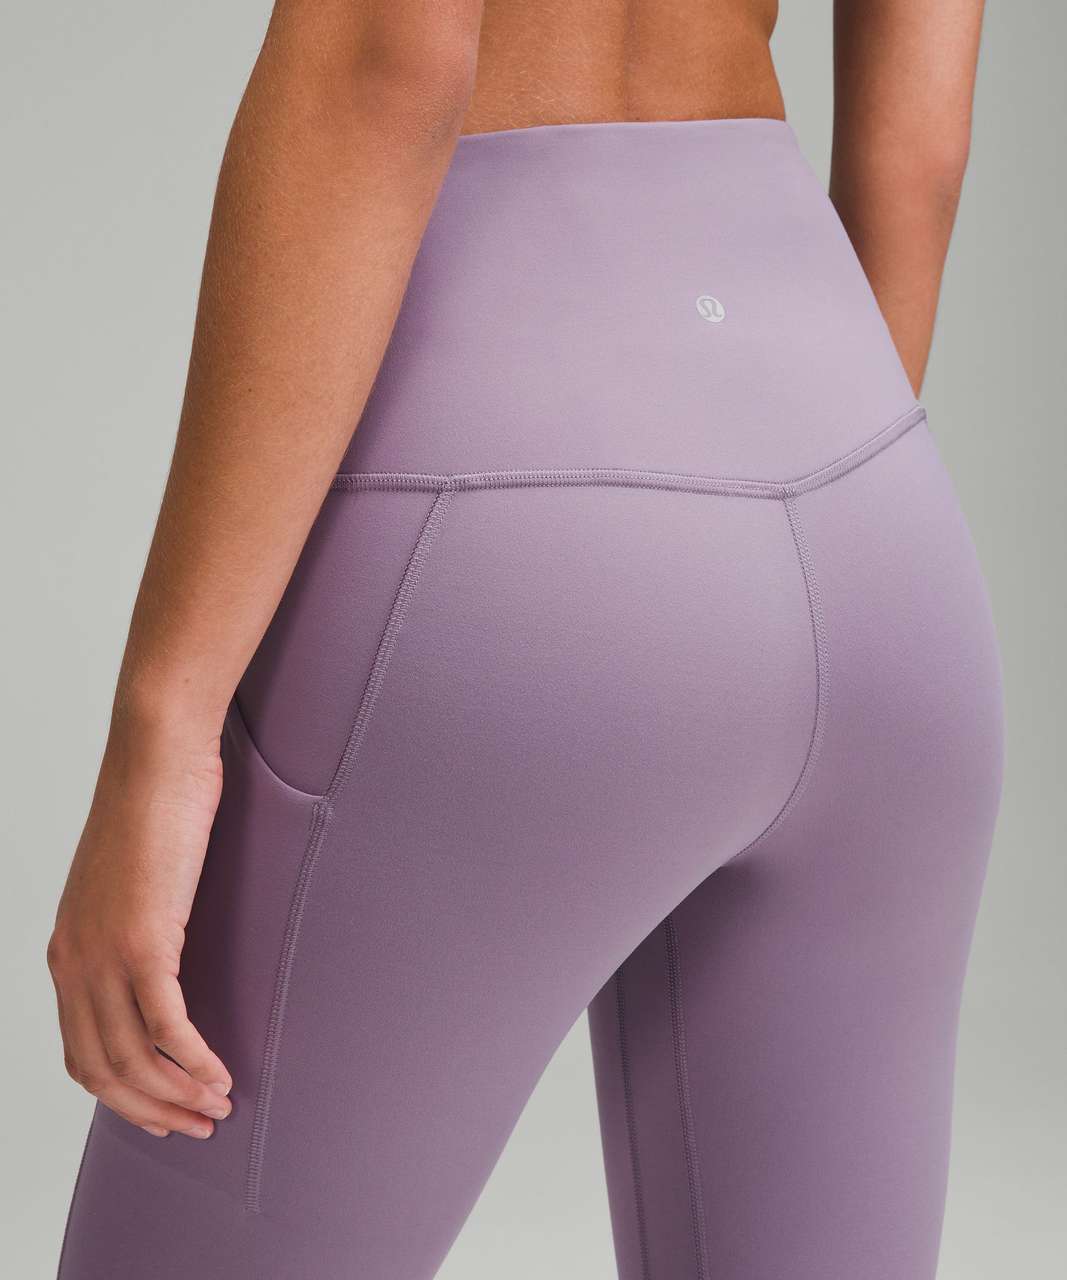 Lululemon Athletica Purple Active Pants Size 4 - 55% off